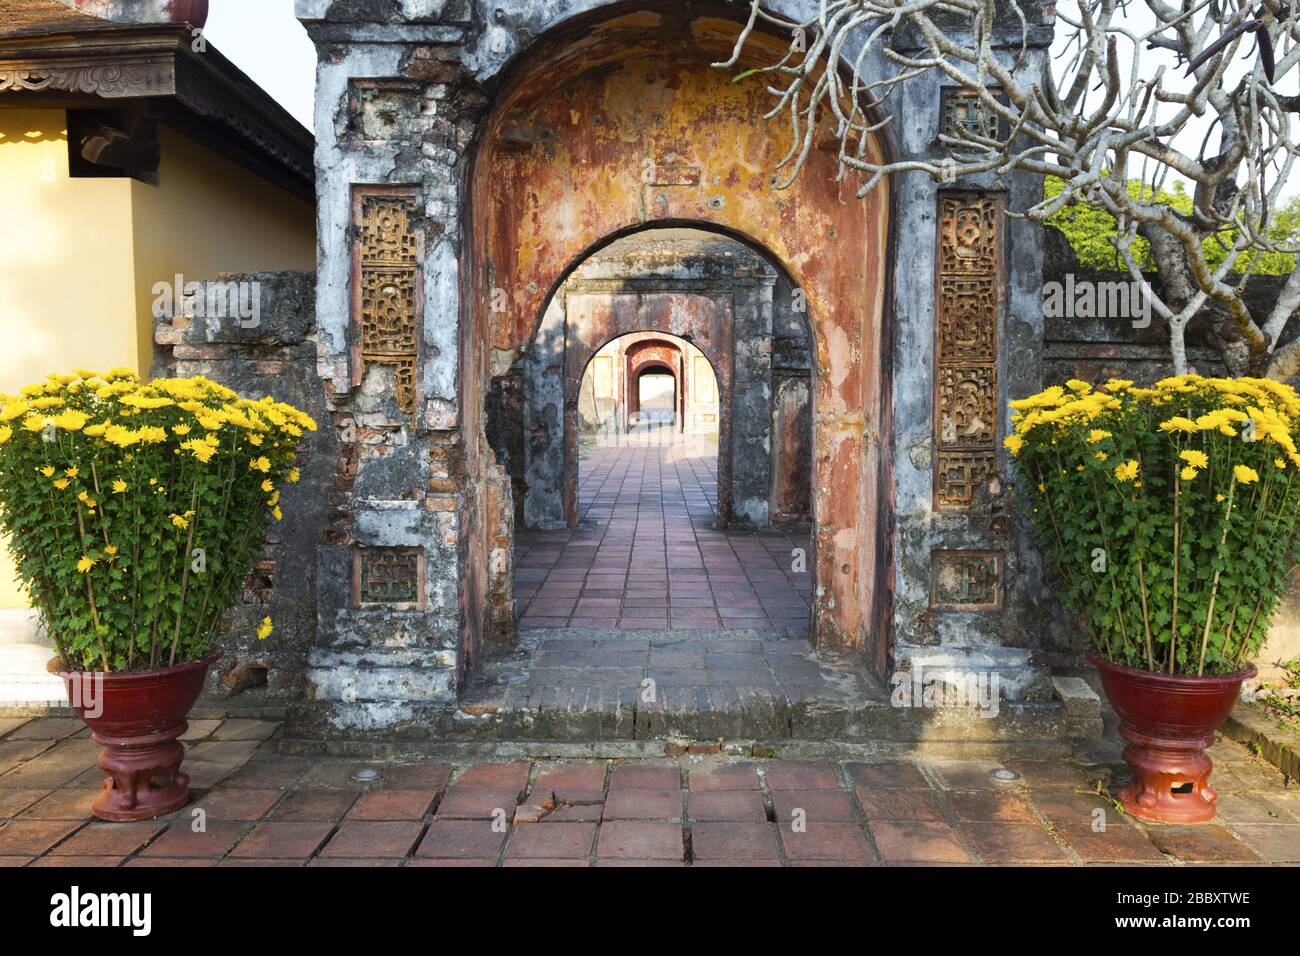 Couloir ancien avec murs de briques et portails éloignés avec fleurs jaunes dans un Flowerpot. Hue Imperial Palace Cité interdite, Vietnam Asie Banque D'Images